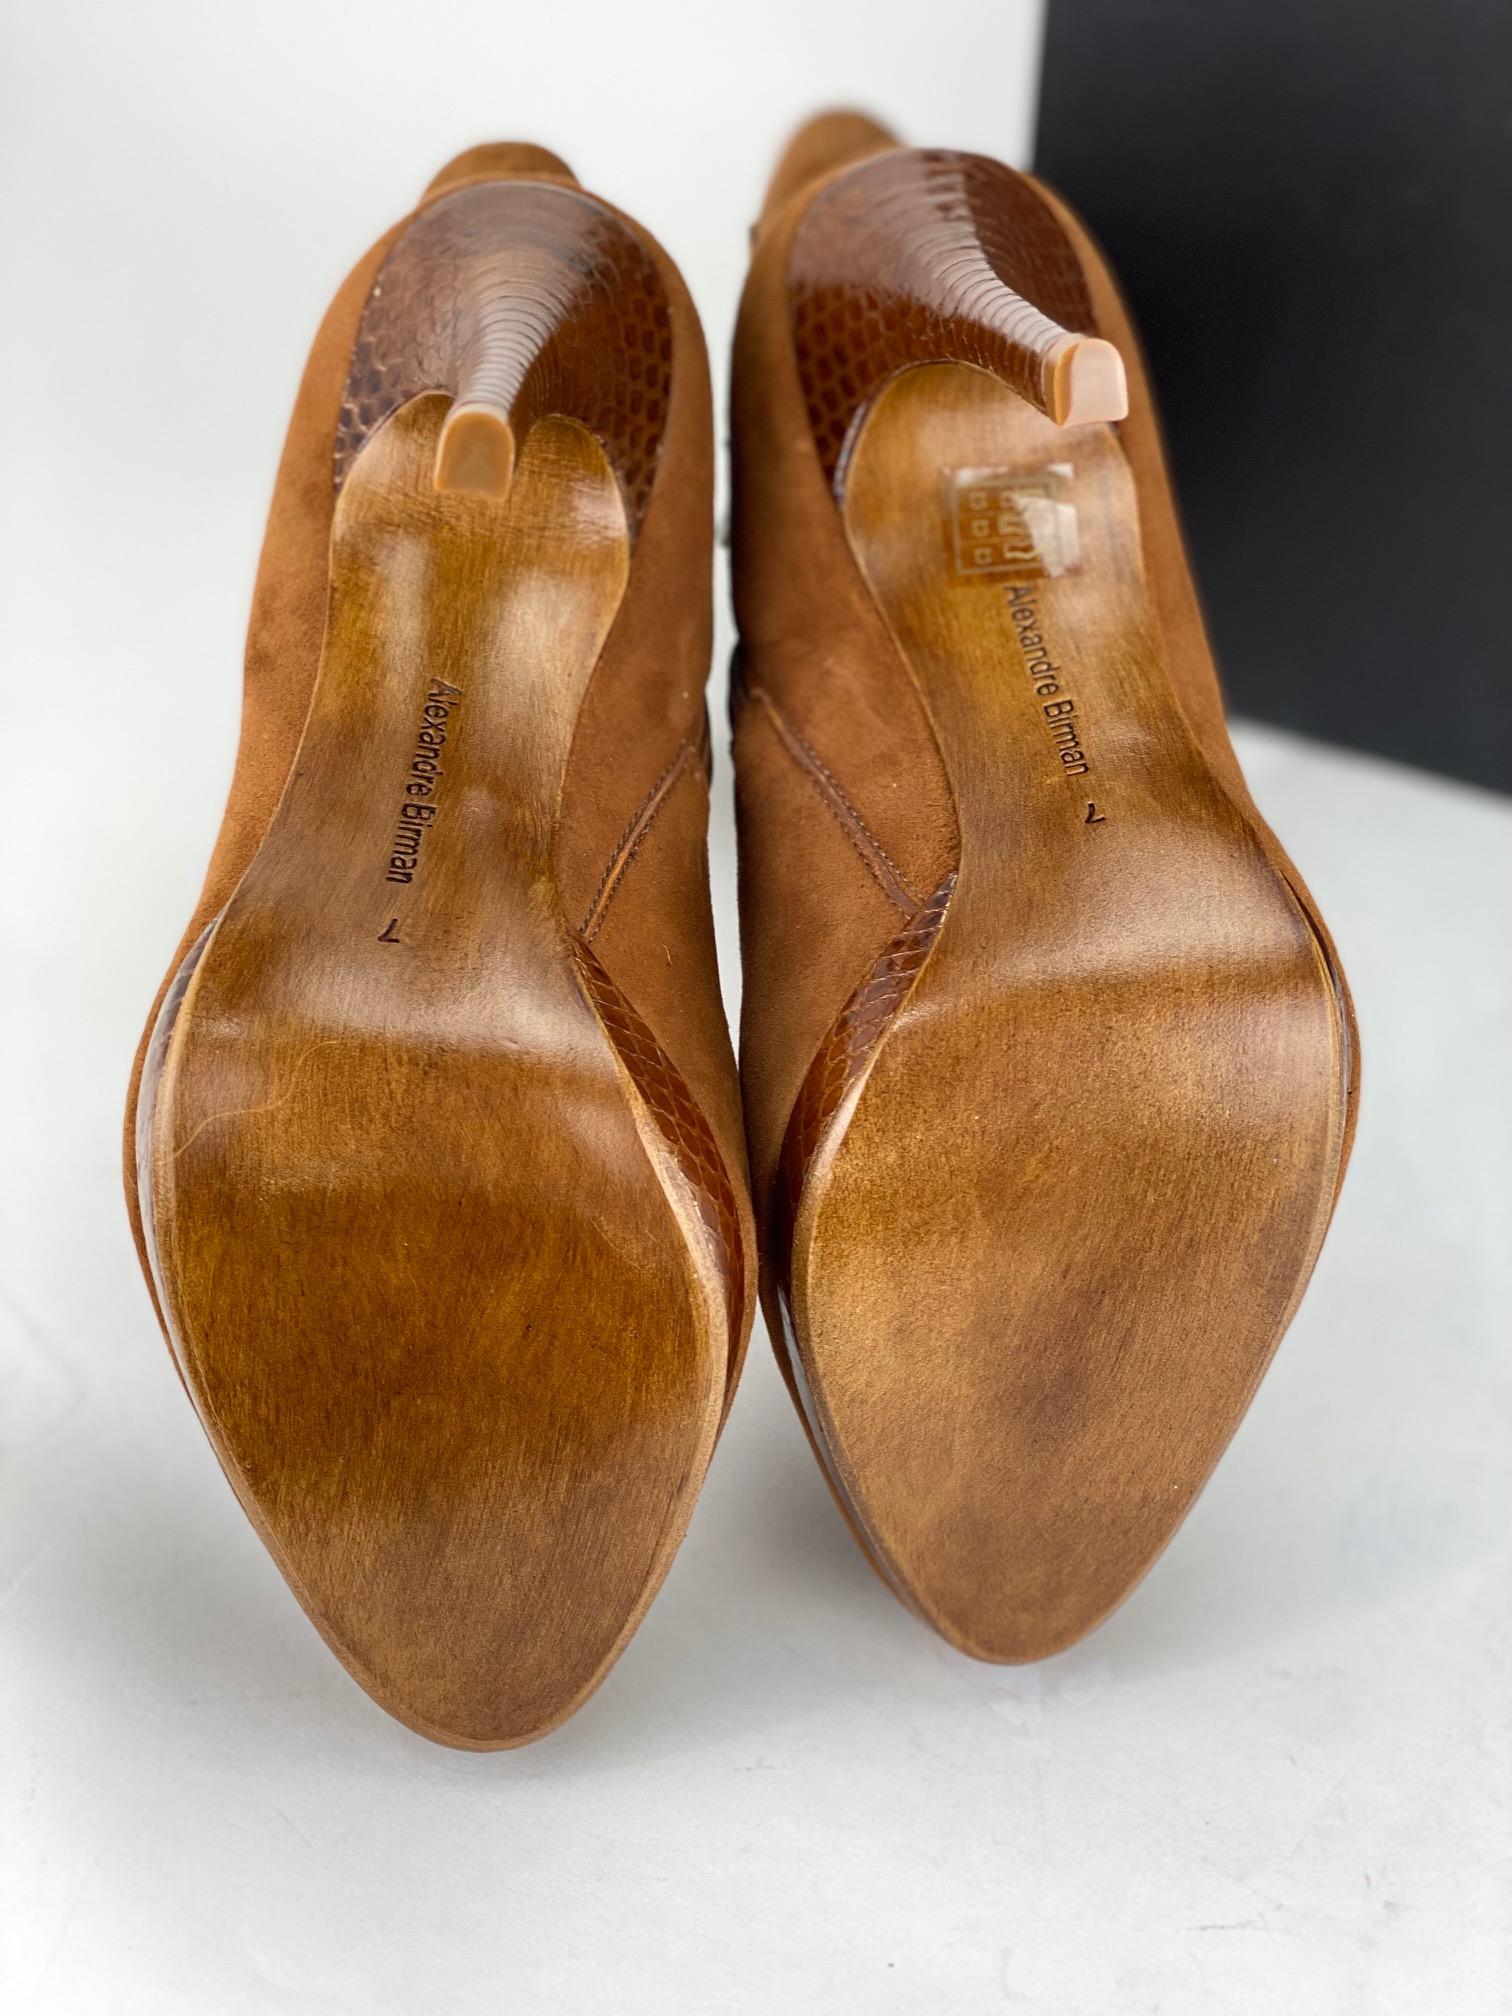 Alexandre Birman Salto Mela Pata Havana Suede Leather Brown Heel Boots  1